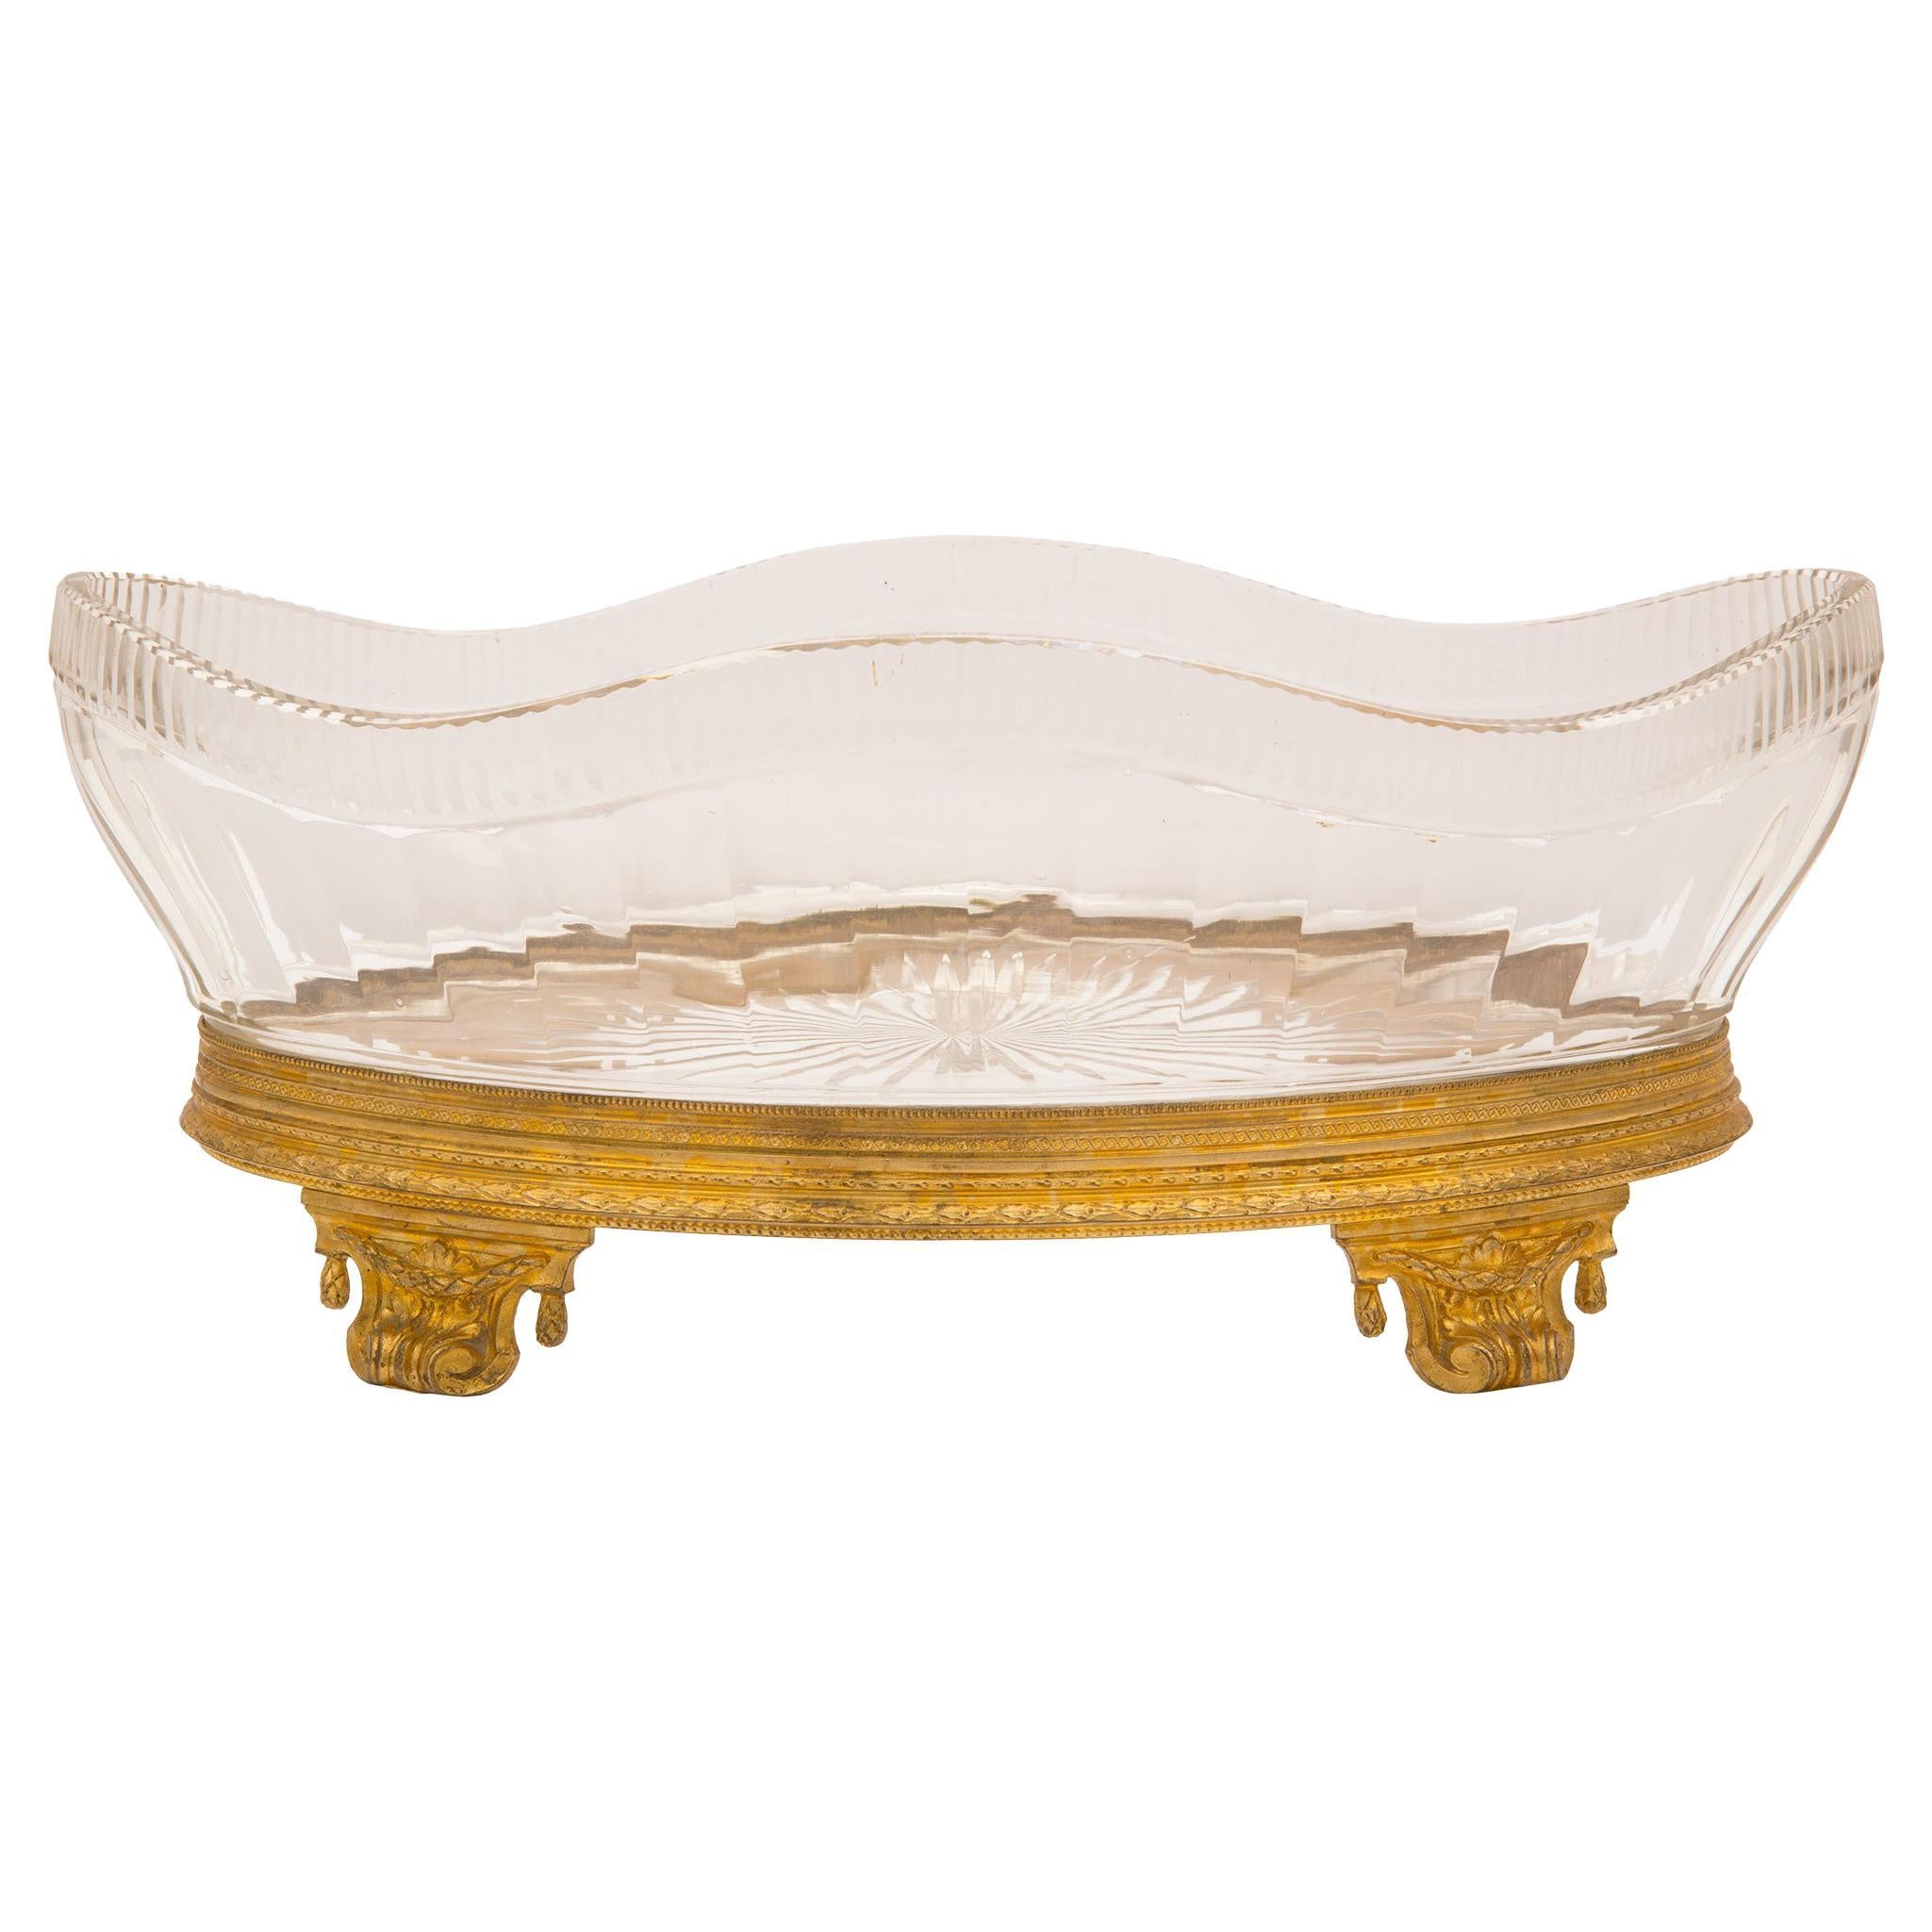 Bol de centre de table de forme ovale de style Louis XVI du 19ème siècle français